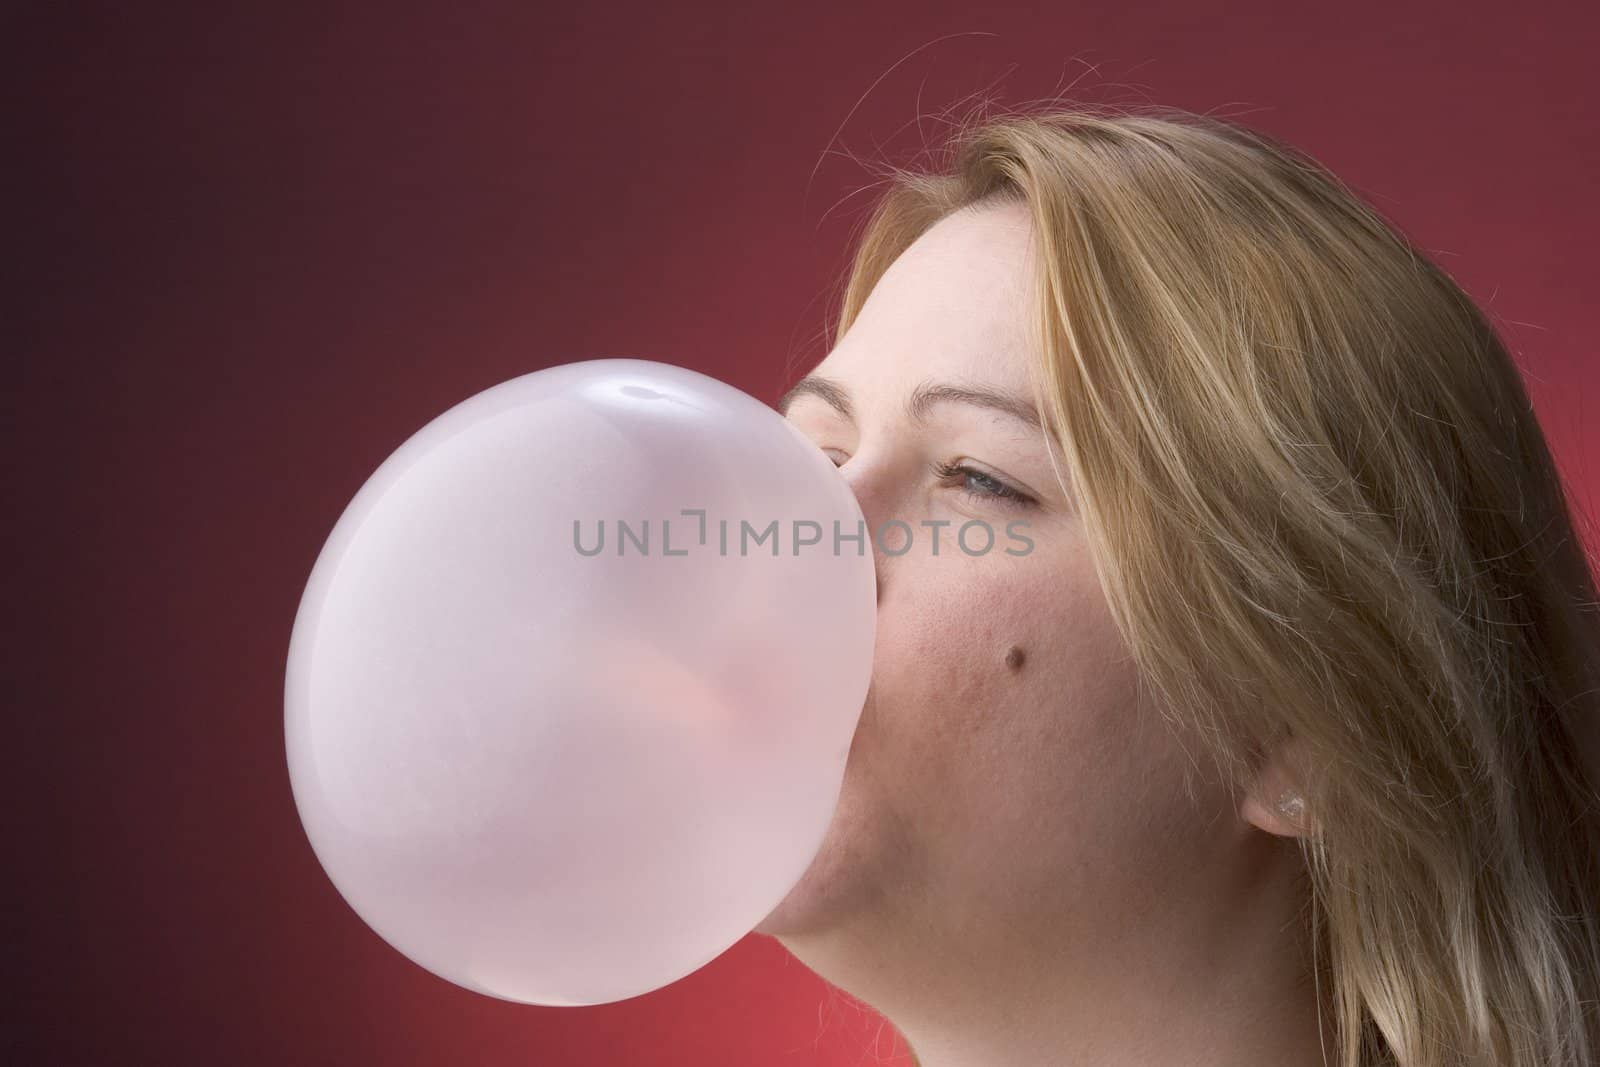 Profile of bubble by mypstudio